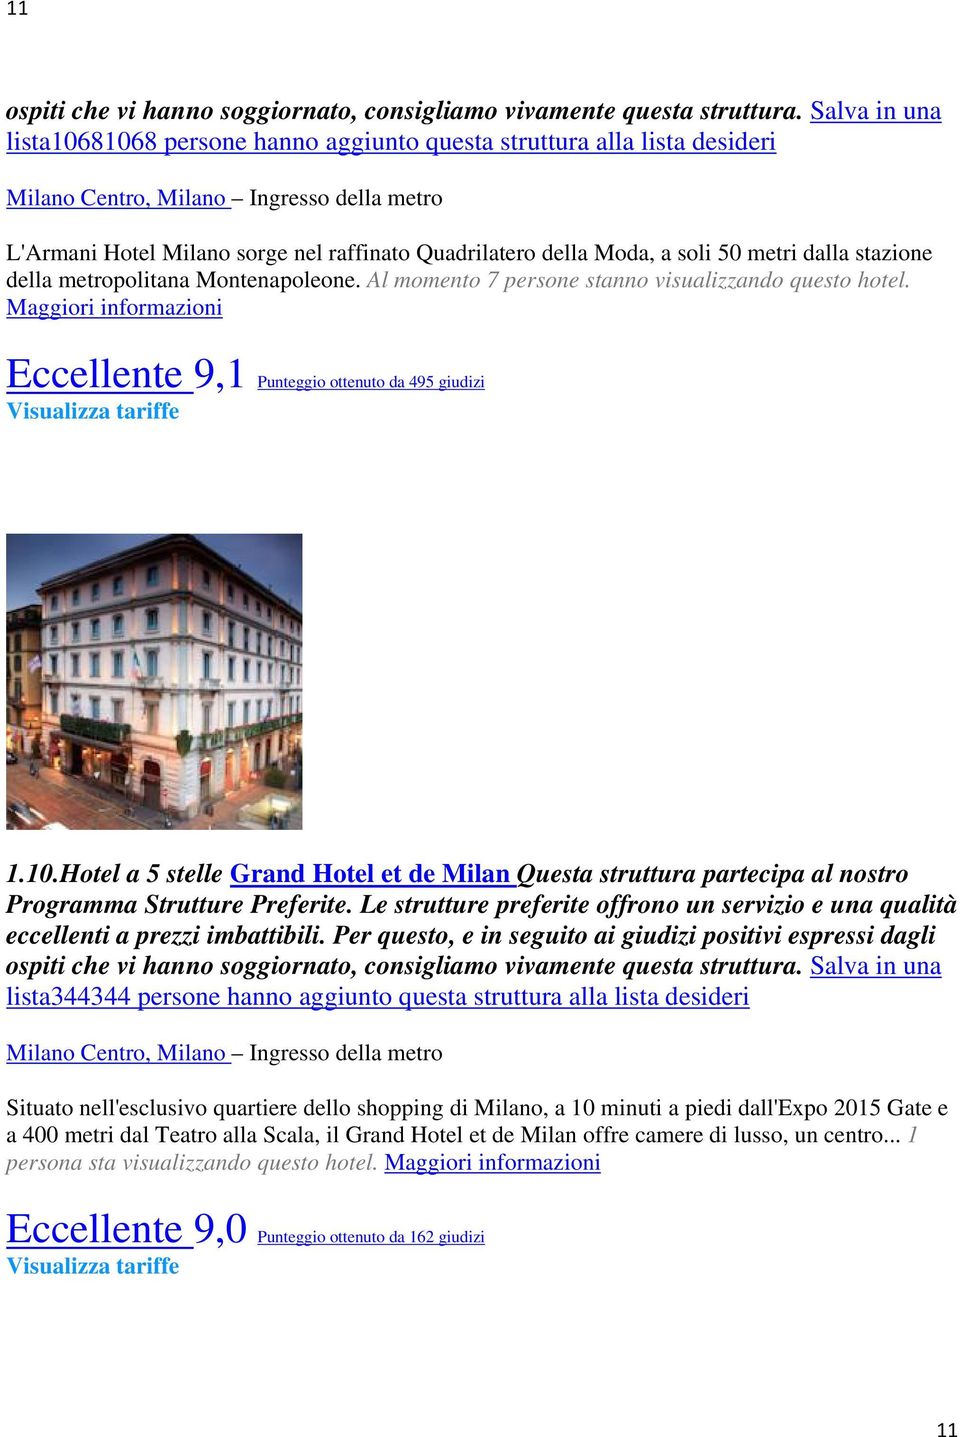 Hotel a 5 stelle Grand Hotel et de Milan Questa struttura partecipa al nostro lista344344 persone hanno aggiunto questa struttura alla lista desideri Milano Centro, Milano Ingresso della metro